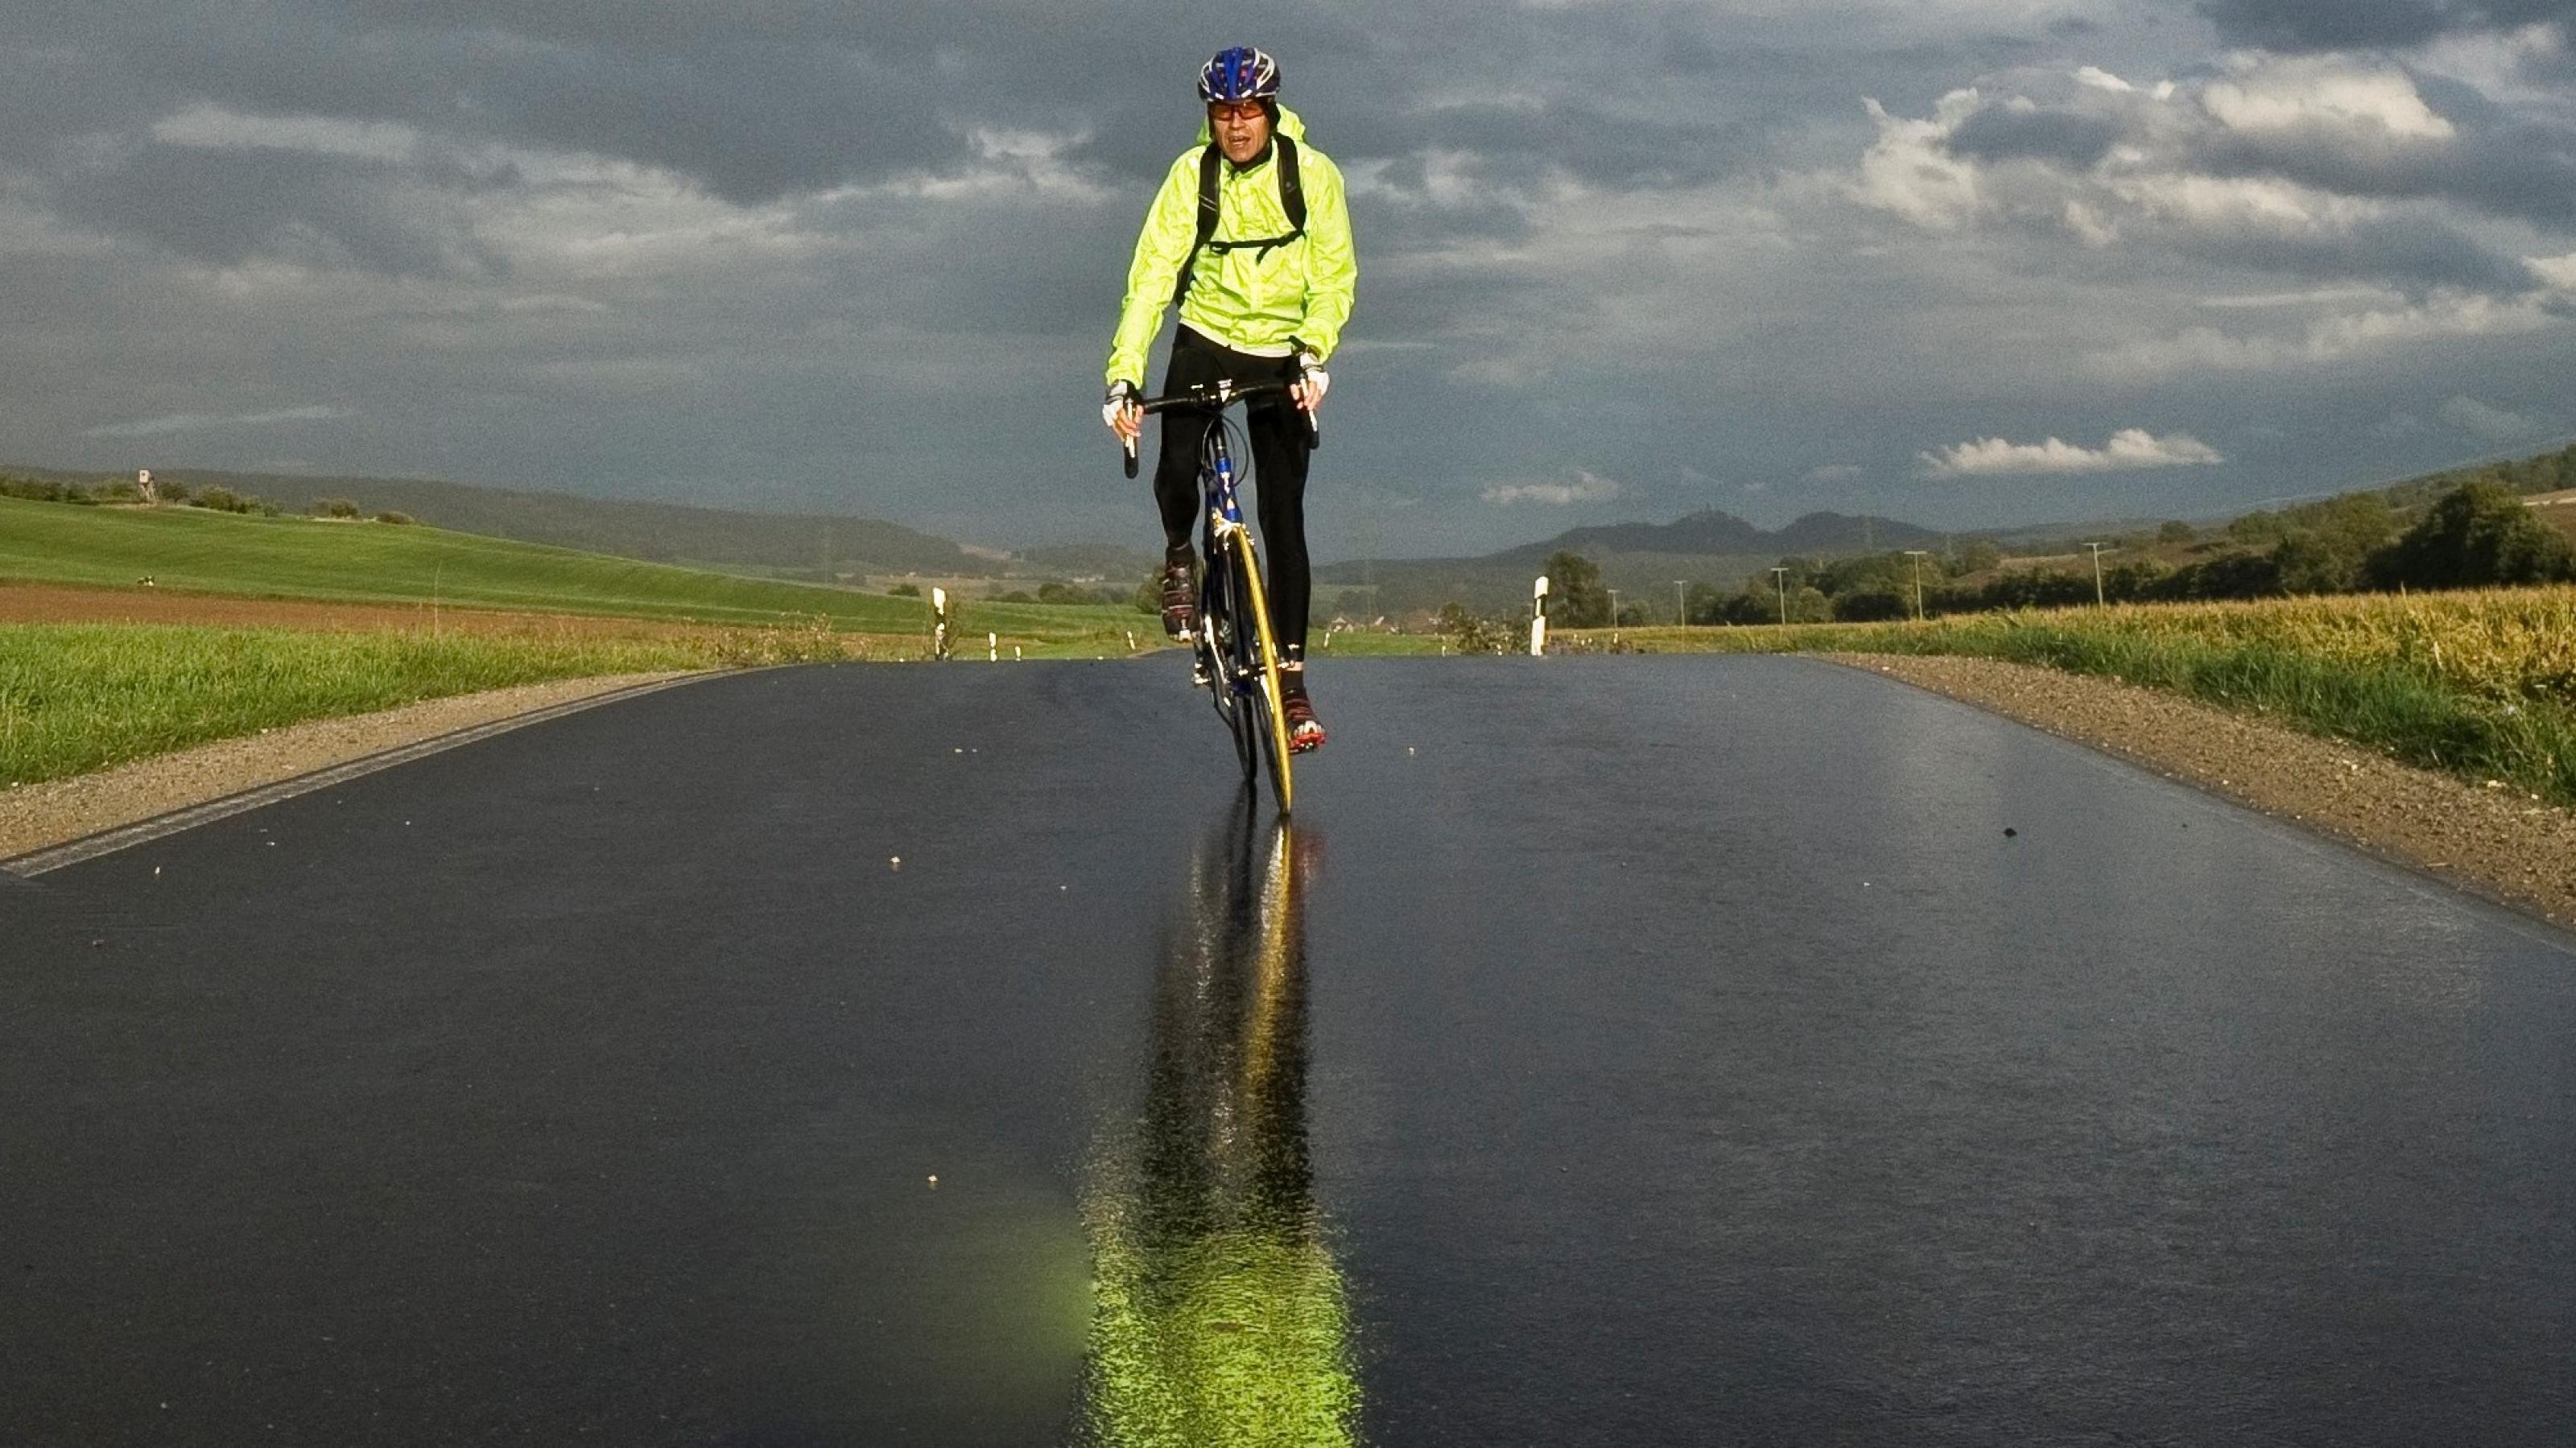 Rennrad-Reporter Martin C Roos fährt auf regennasser Fahrbahn direkt auf die Kamera zu. Die Sonne scheint bereits wieder, am Horizont dräuen dunkle Wolken